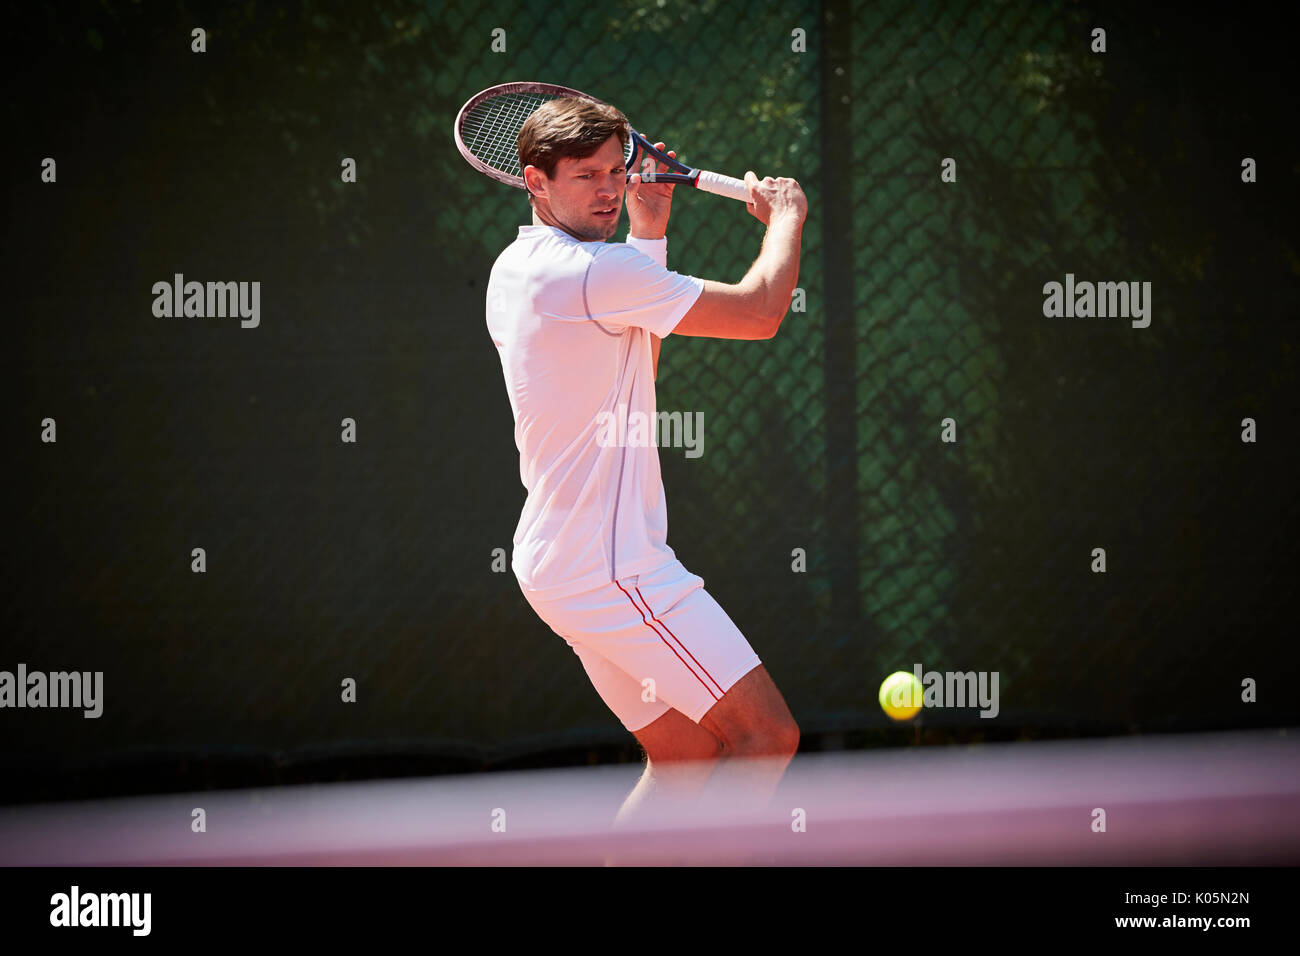 Jeune joueur de tennis masculin en jouant au tennis, se balancer à balle de tennis sur le court de tennis ensoleillé Banque D'Images